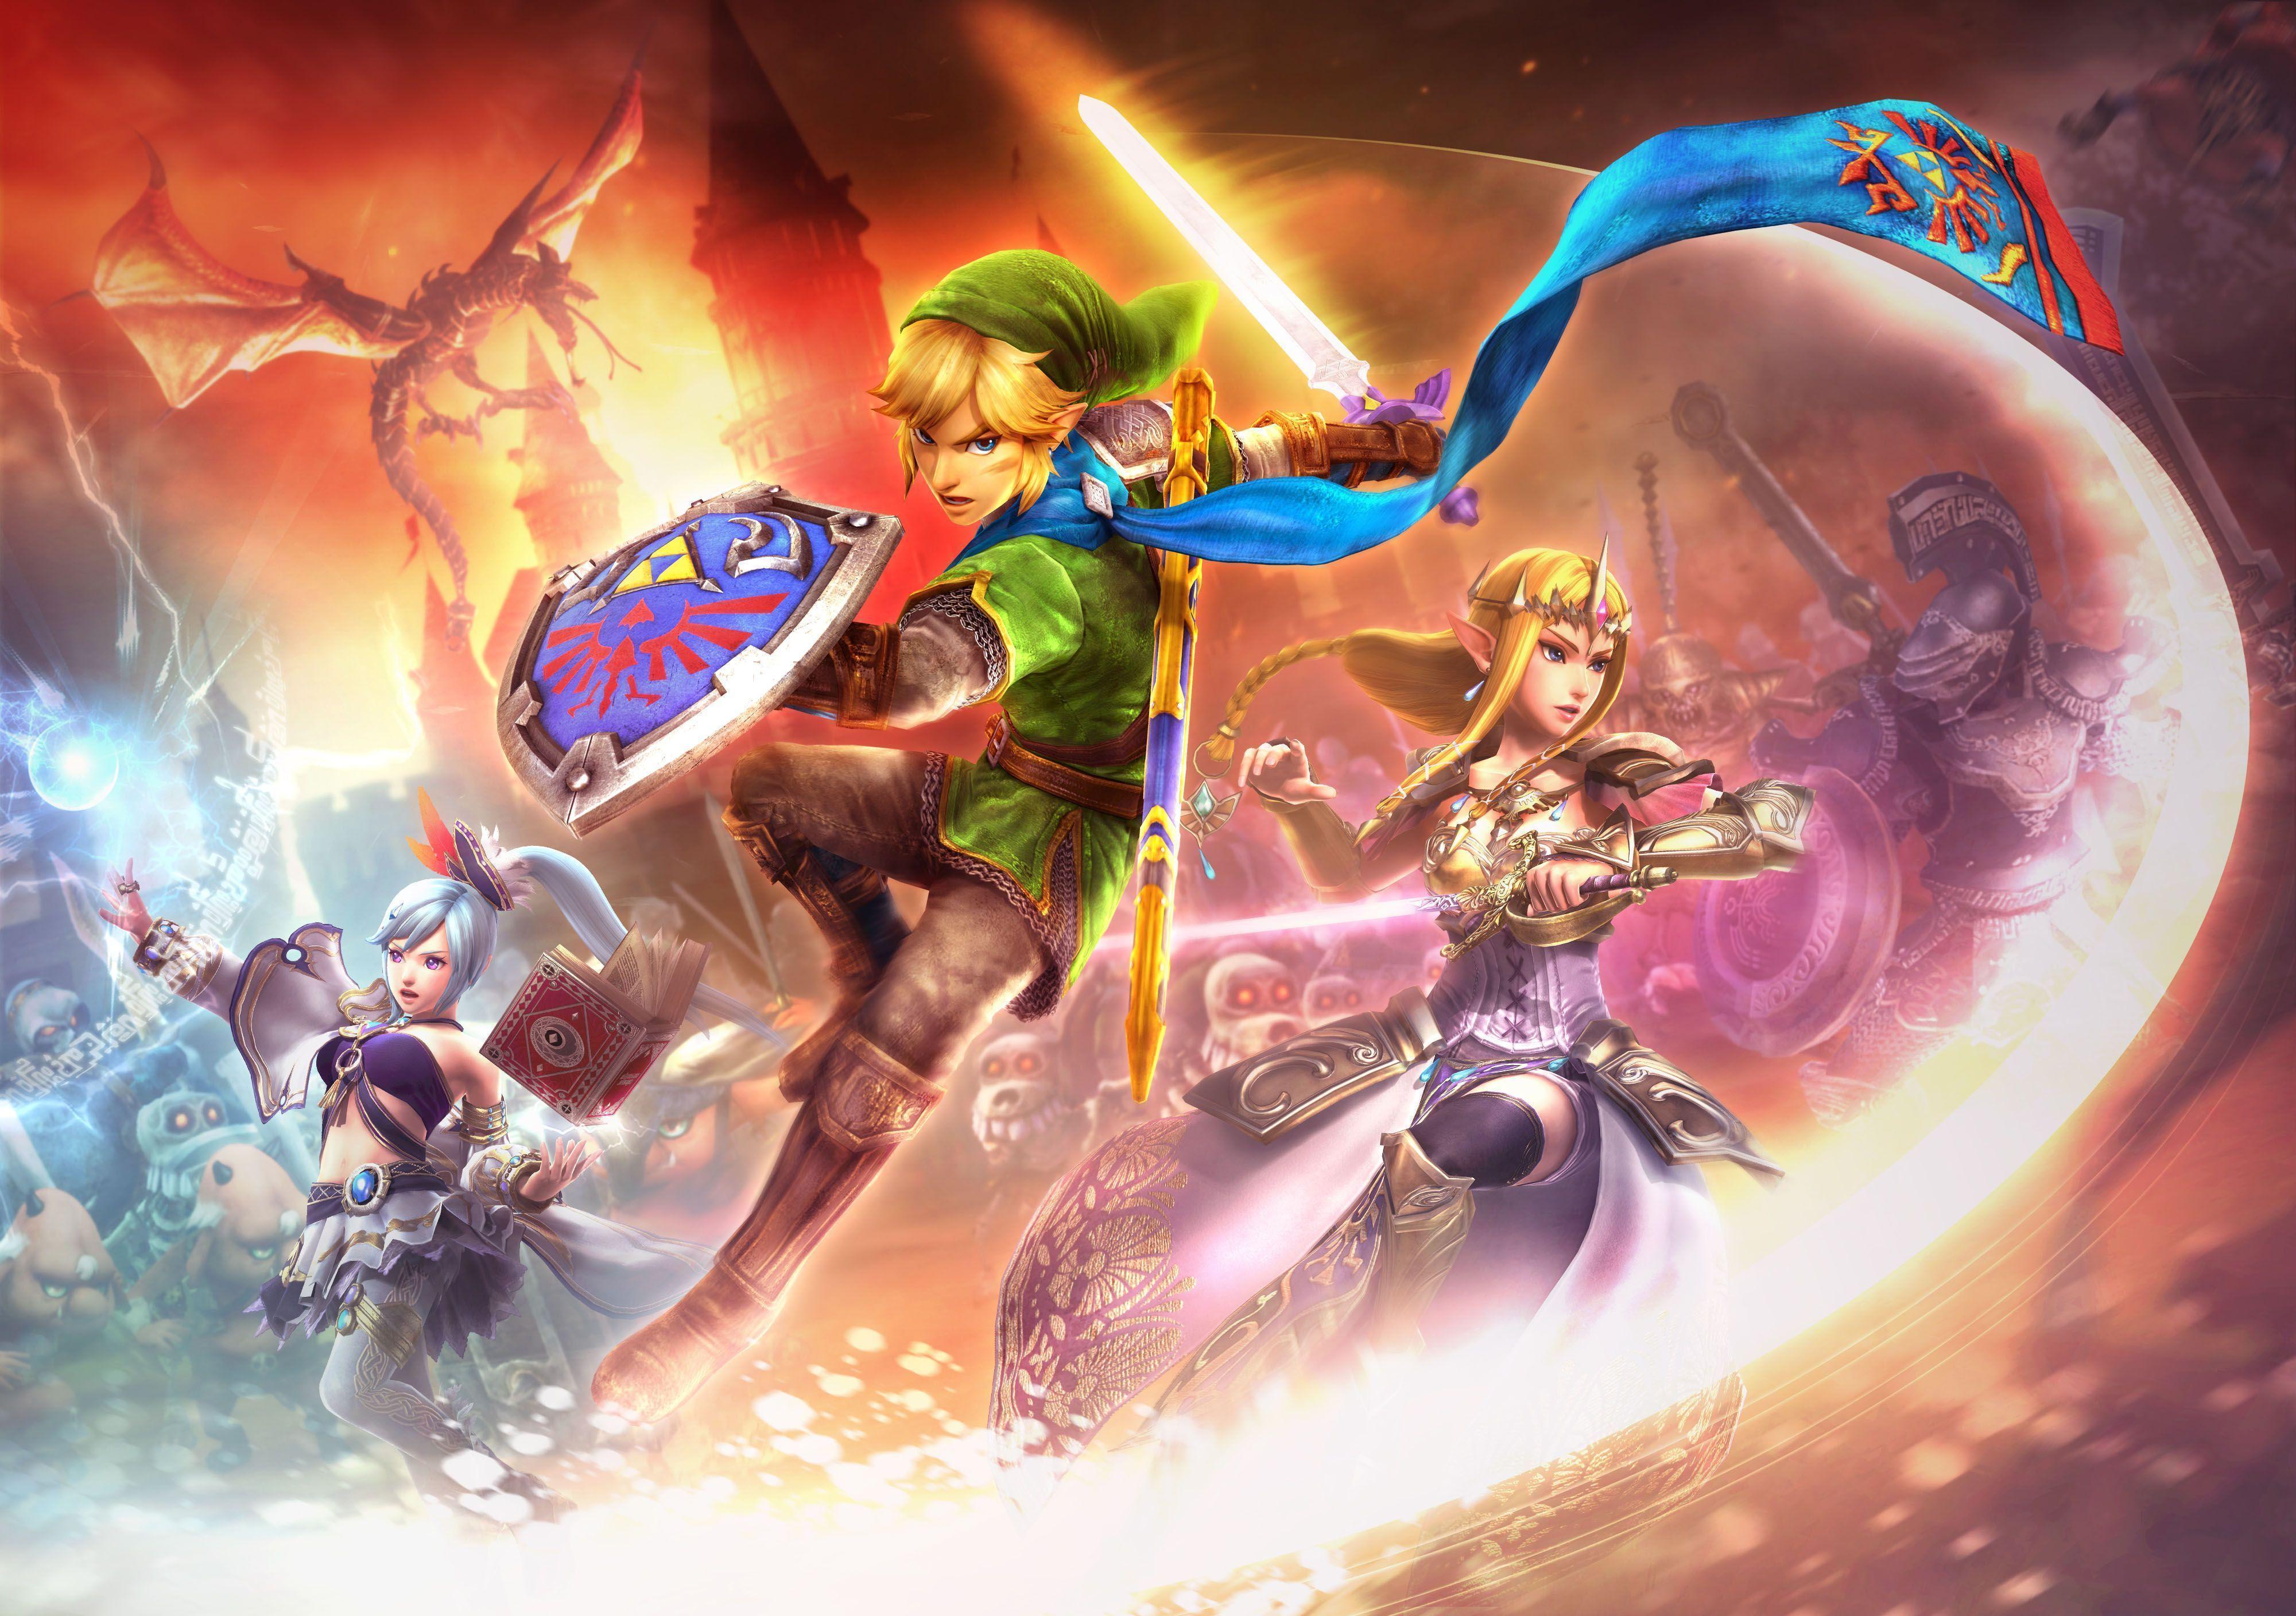 Unduh 34 Zelda Video Games Wallpaper Terbaik - Posts.id